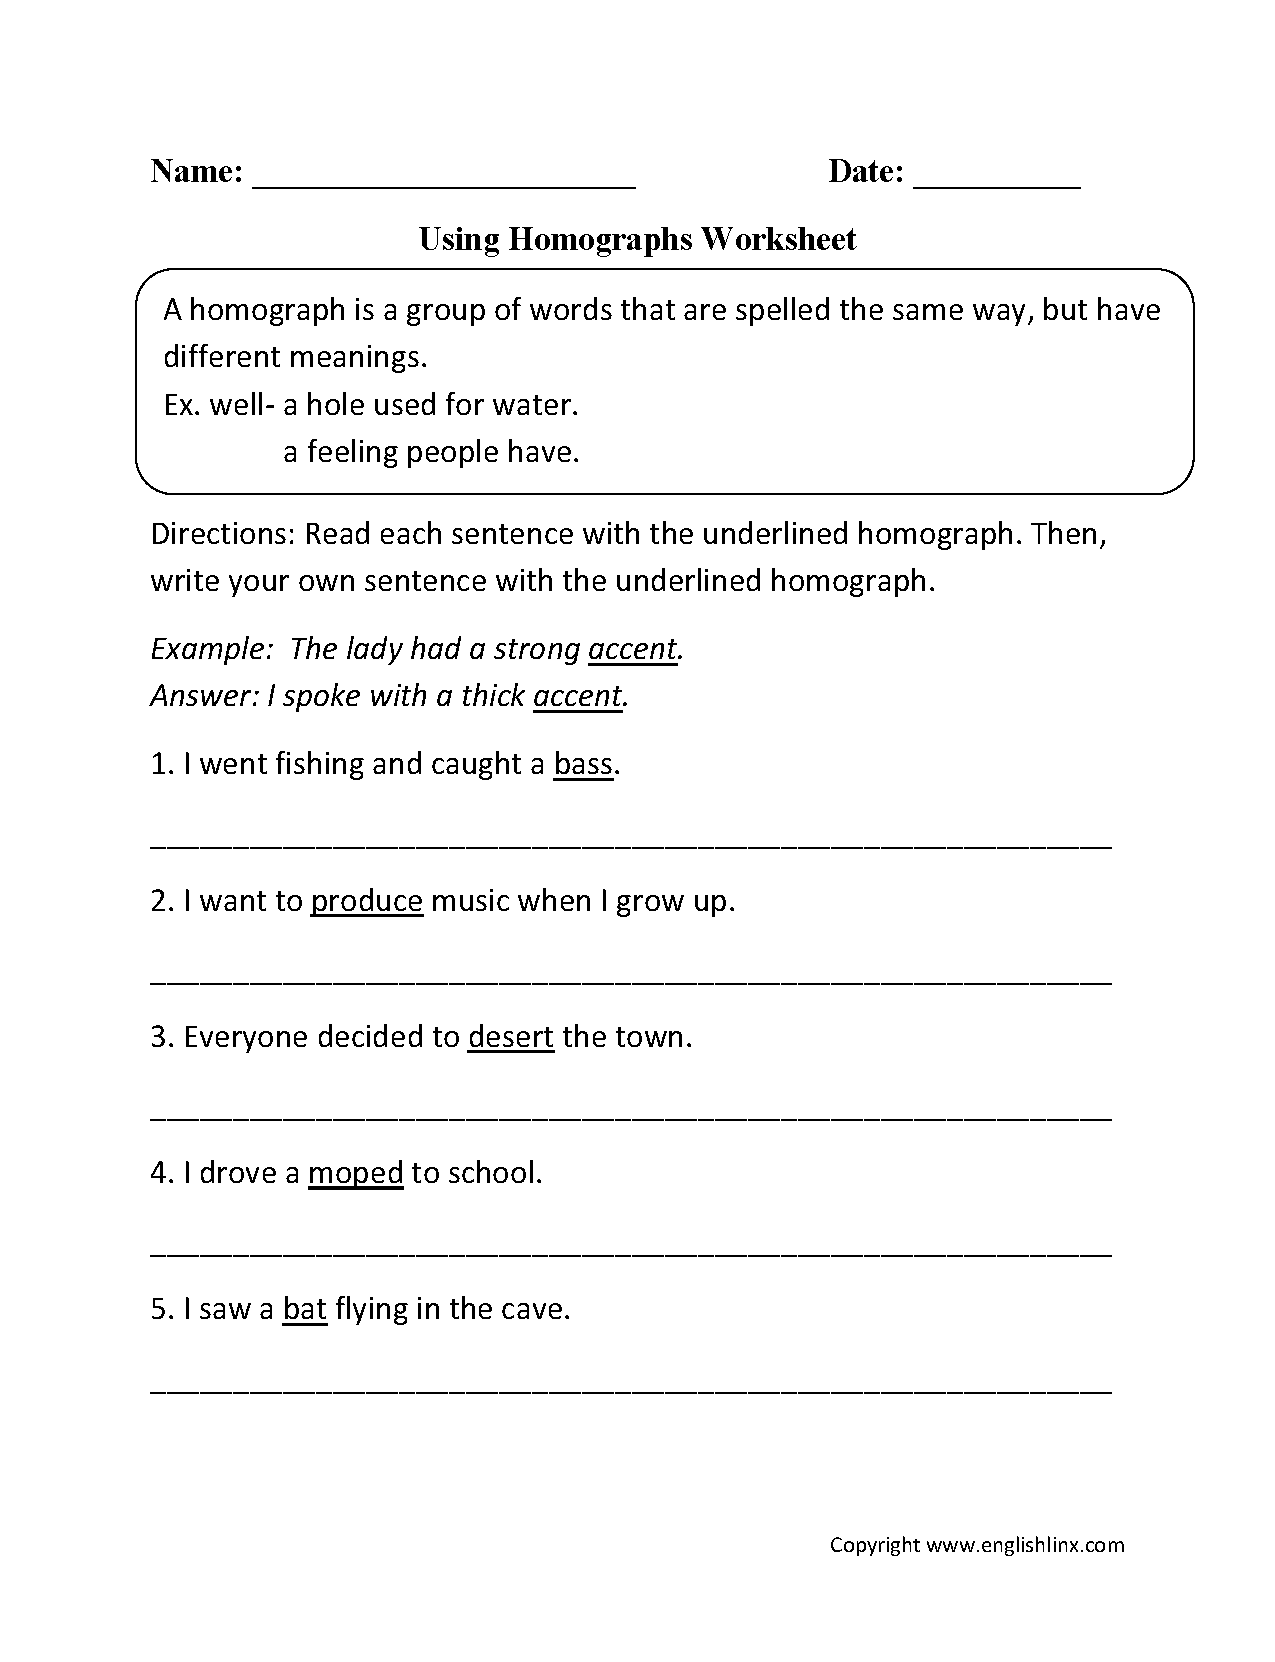 vocabulary-worksheets-homograph-worksheets